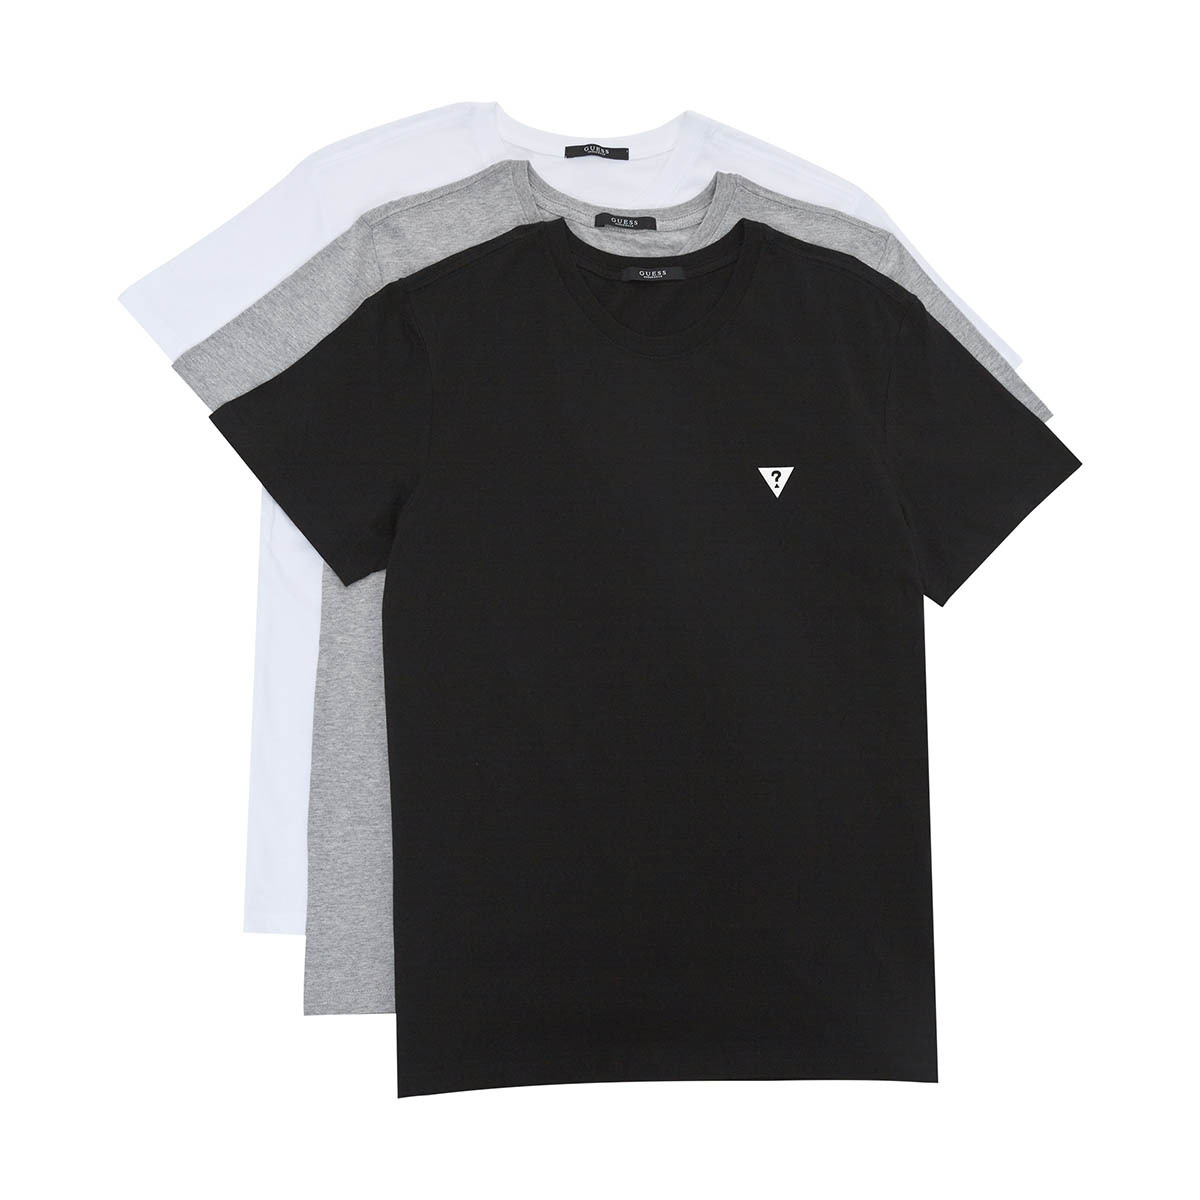 게스 남성 크루넥 티셔츠 3매 - 21A (화이트/그레이/블랙), XL(110)